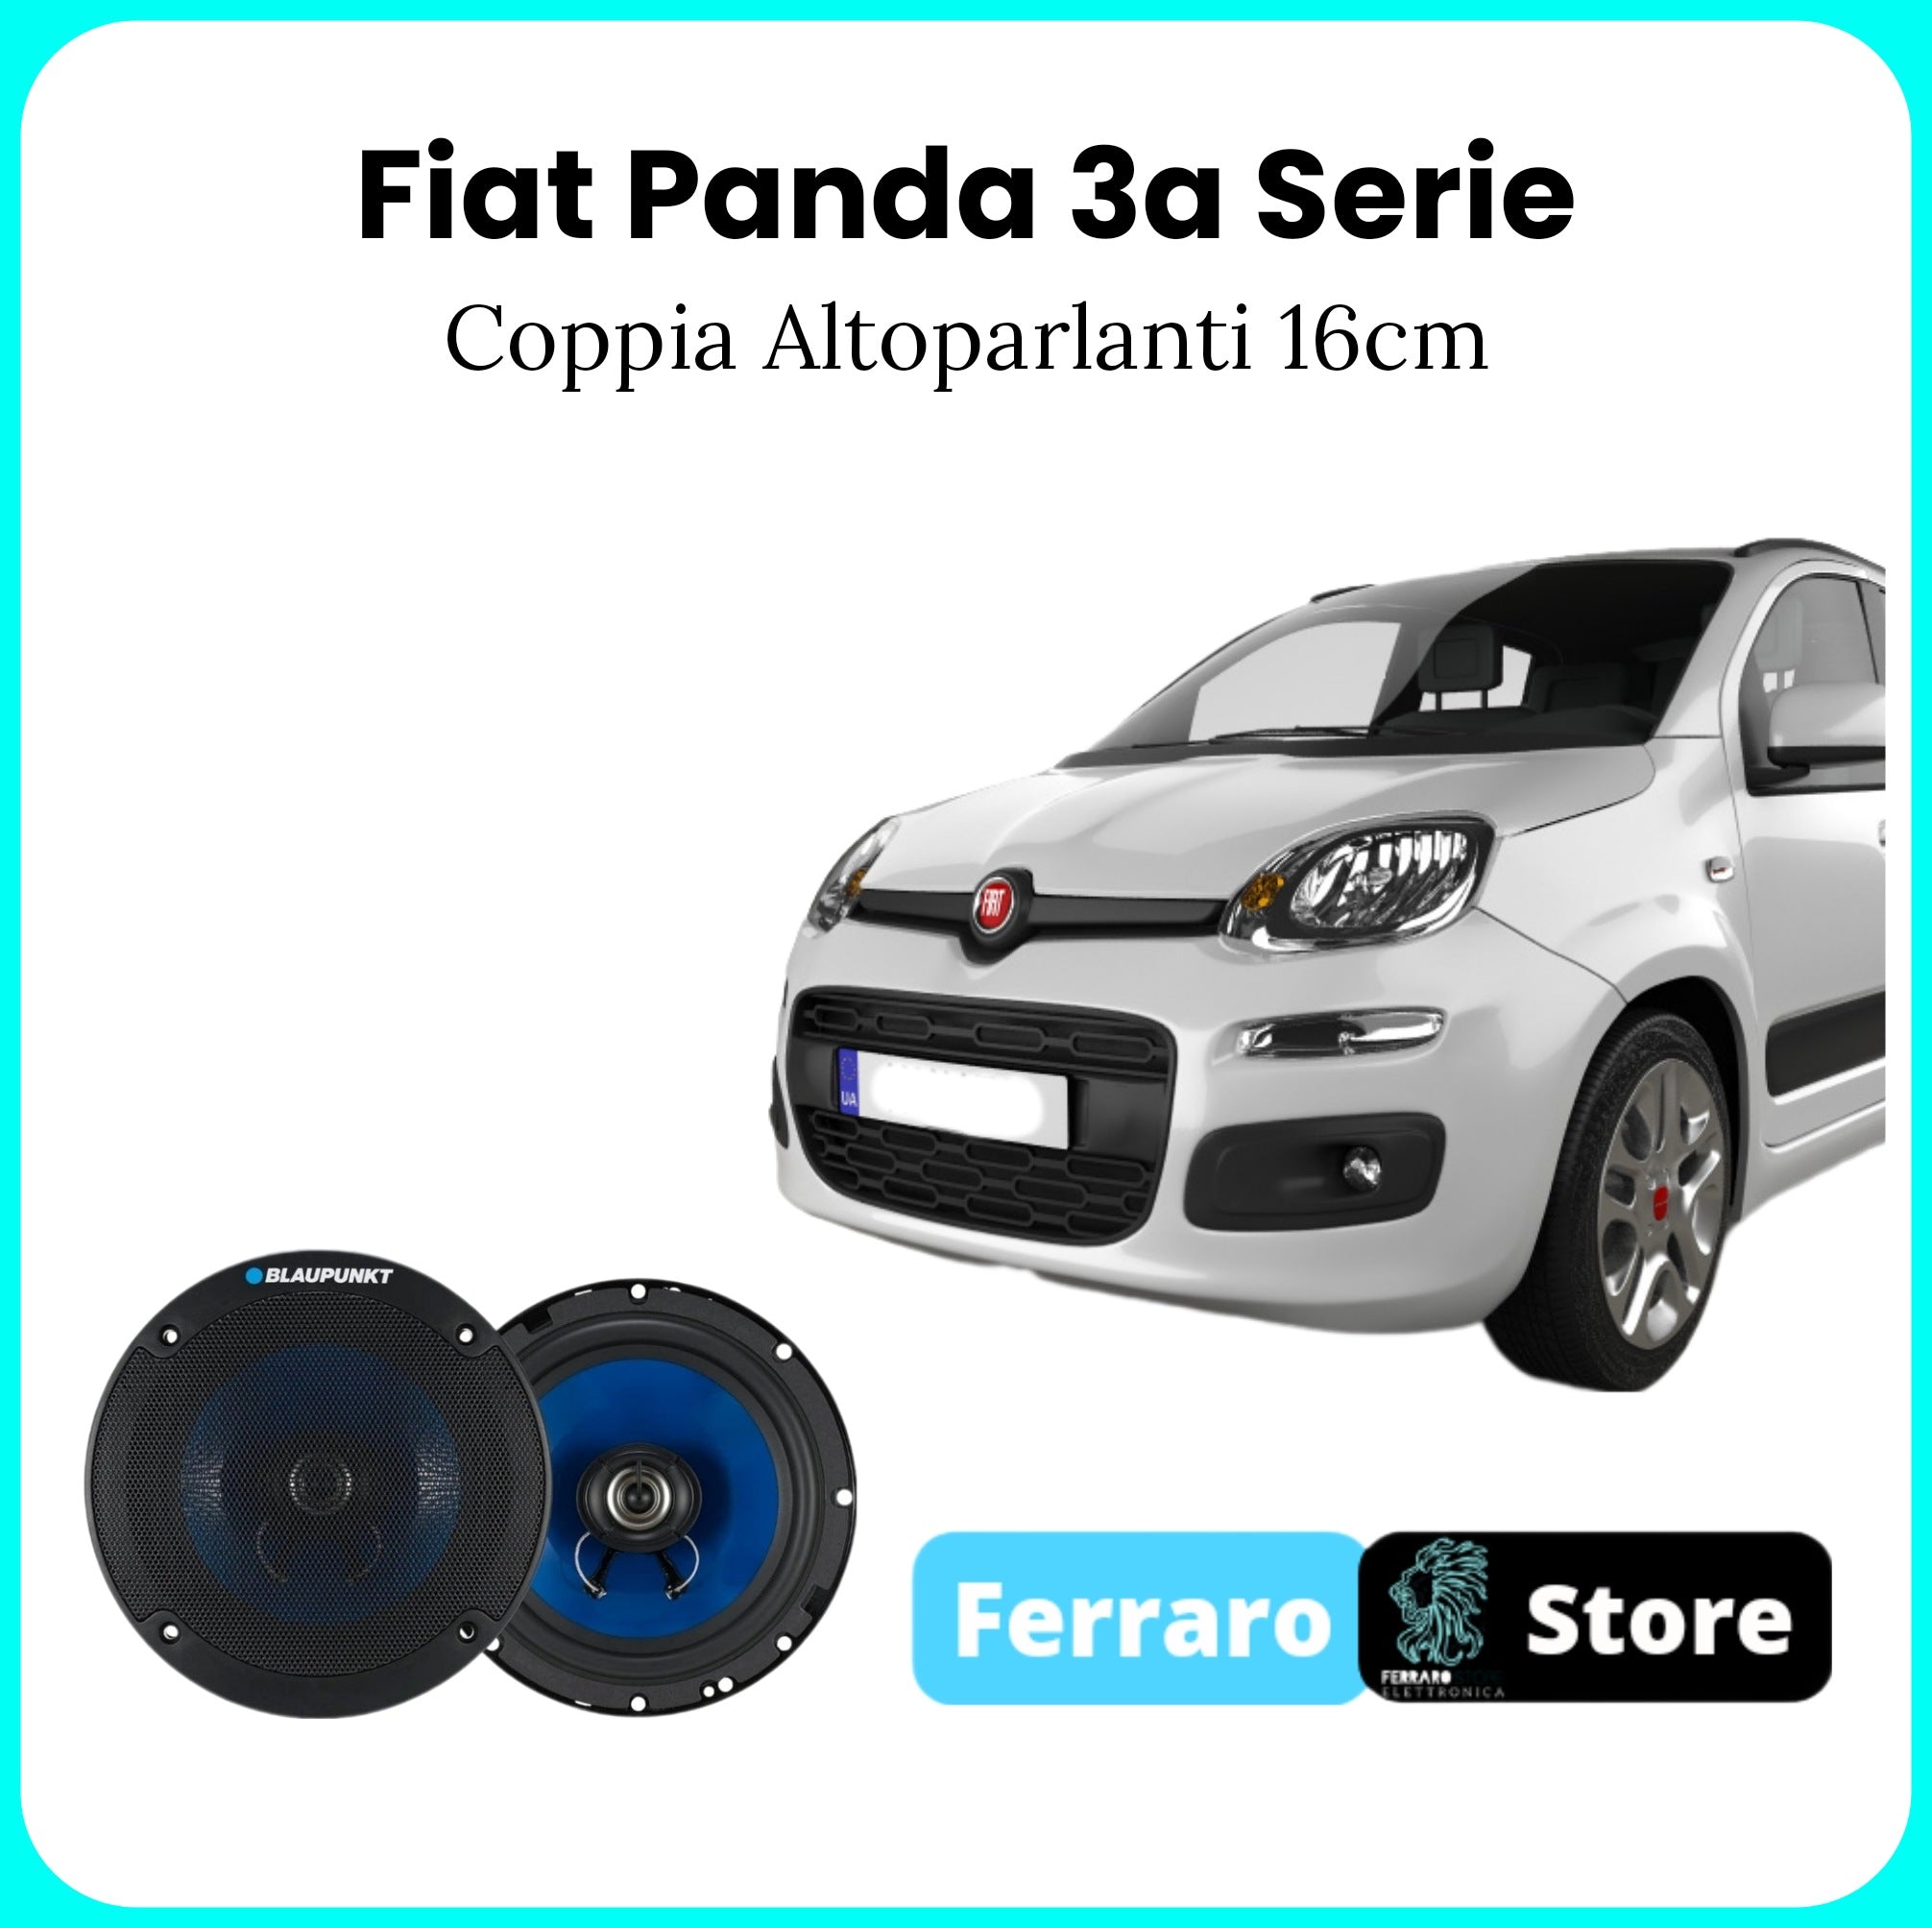 Coppia Altoparlanti per Fiat Panda Terza Serie - Blaupunk, 2 Vie, Coassiali 5.2 16cm, 250w